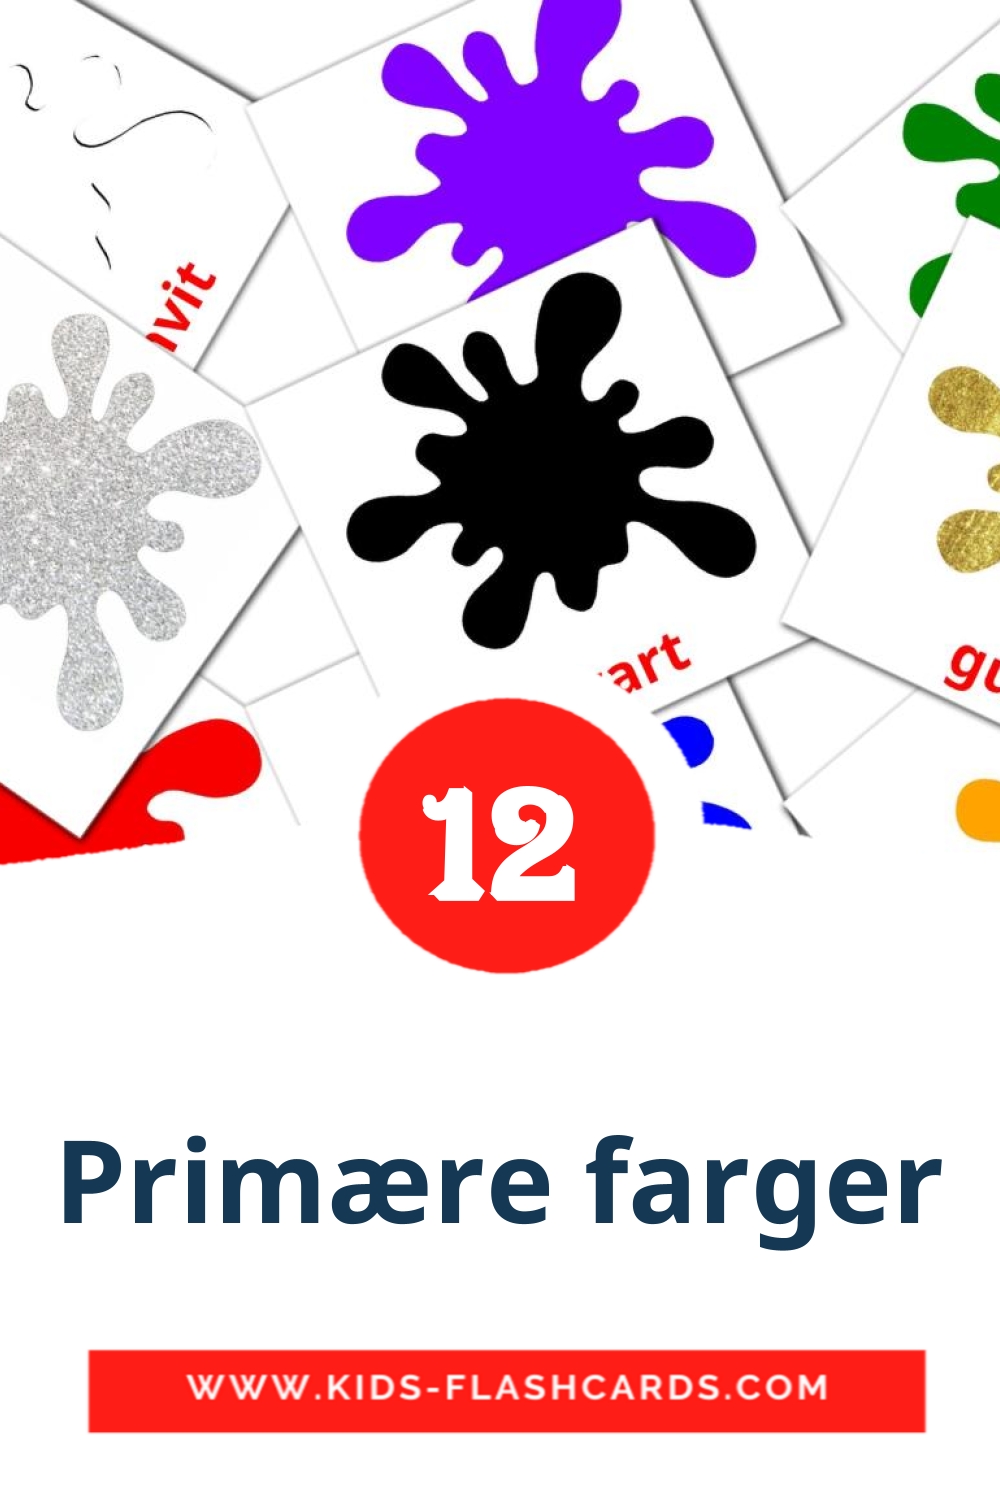 12 cartes illustrées de Primære farger pour la maternelle en norvégien